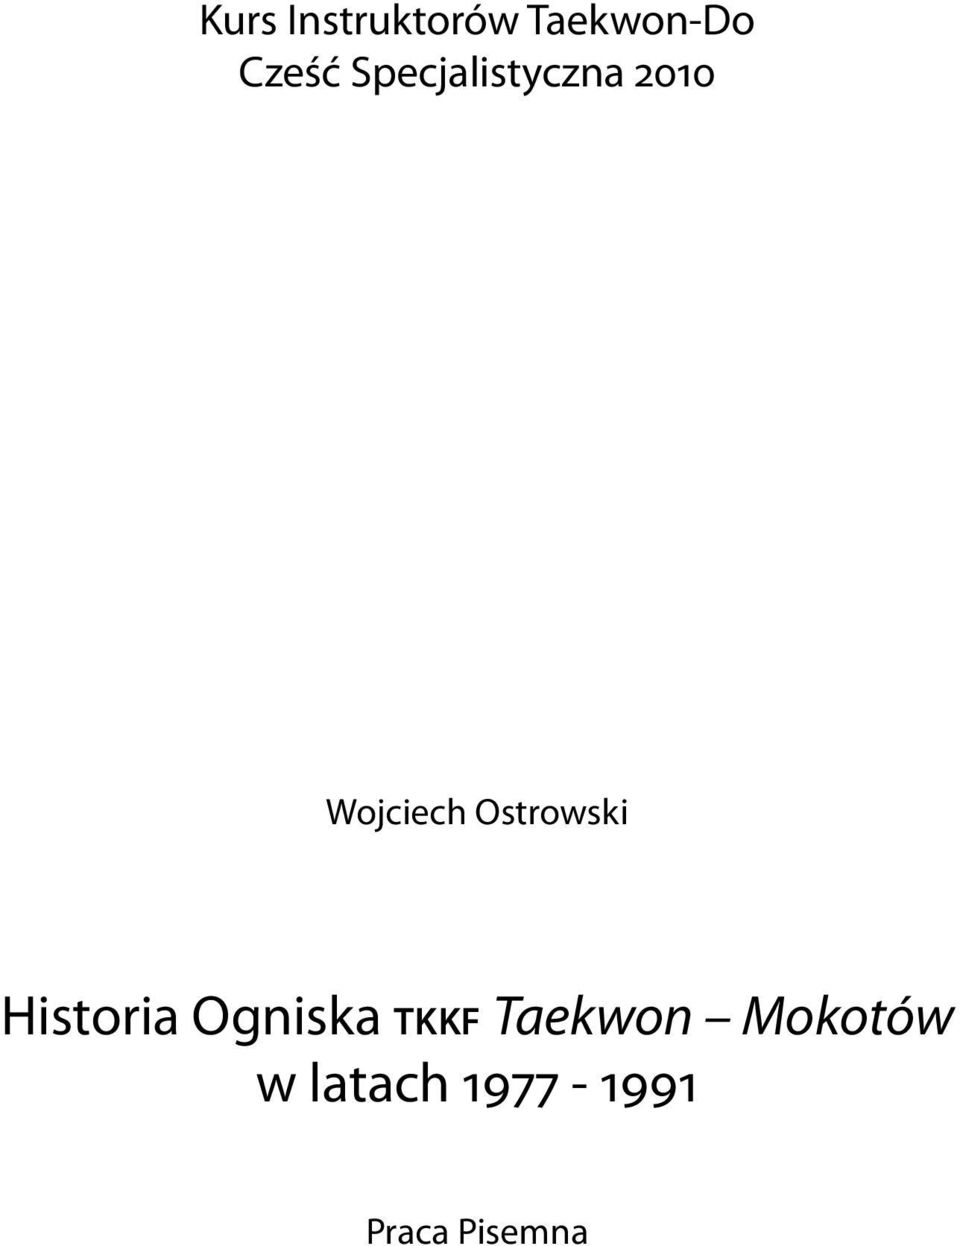 Ostrowski Historia Ogniska tkkf